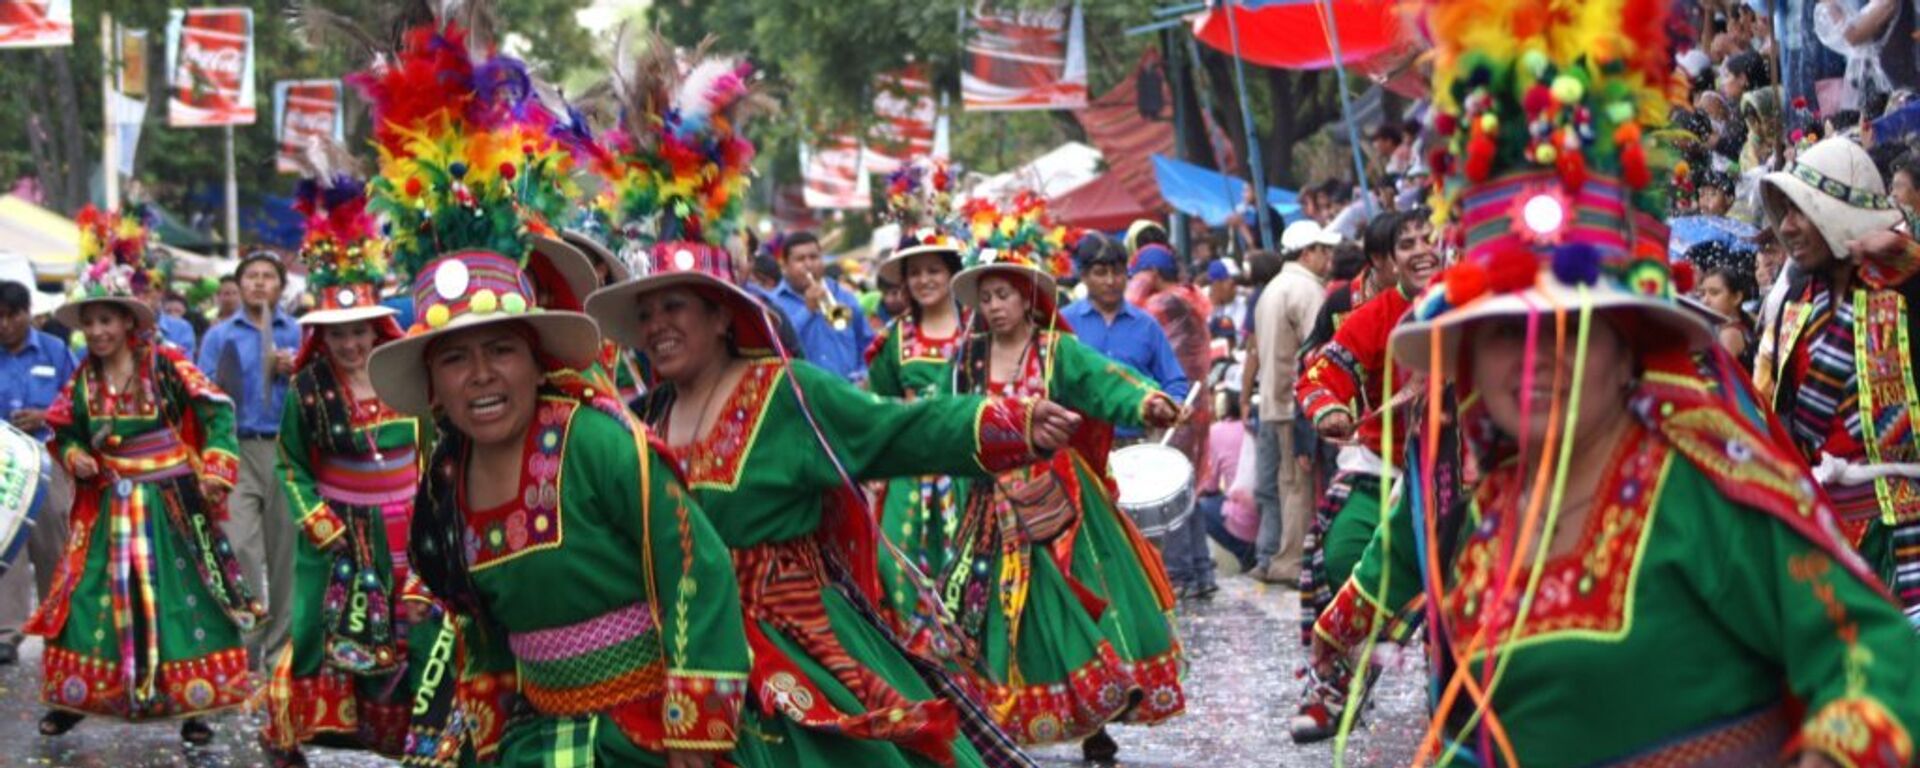 Carnaval de Oruro, Bolivia - Sputnik Mundo, 1920, 07.12.2021